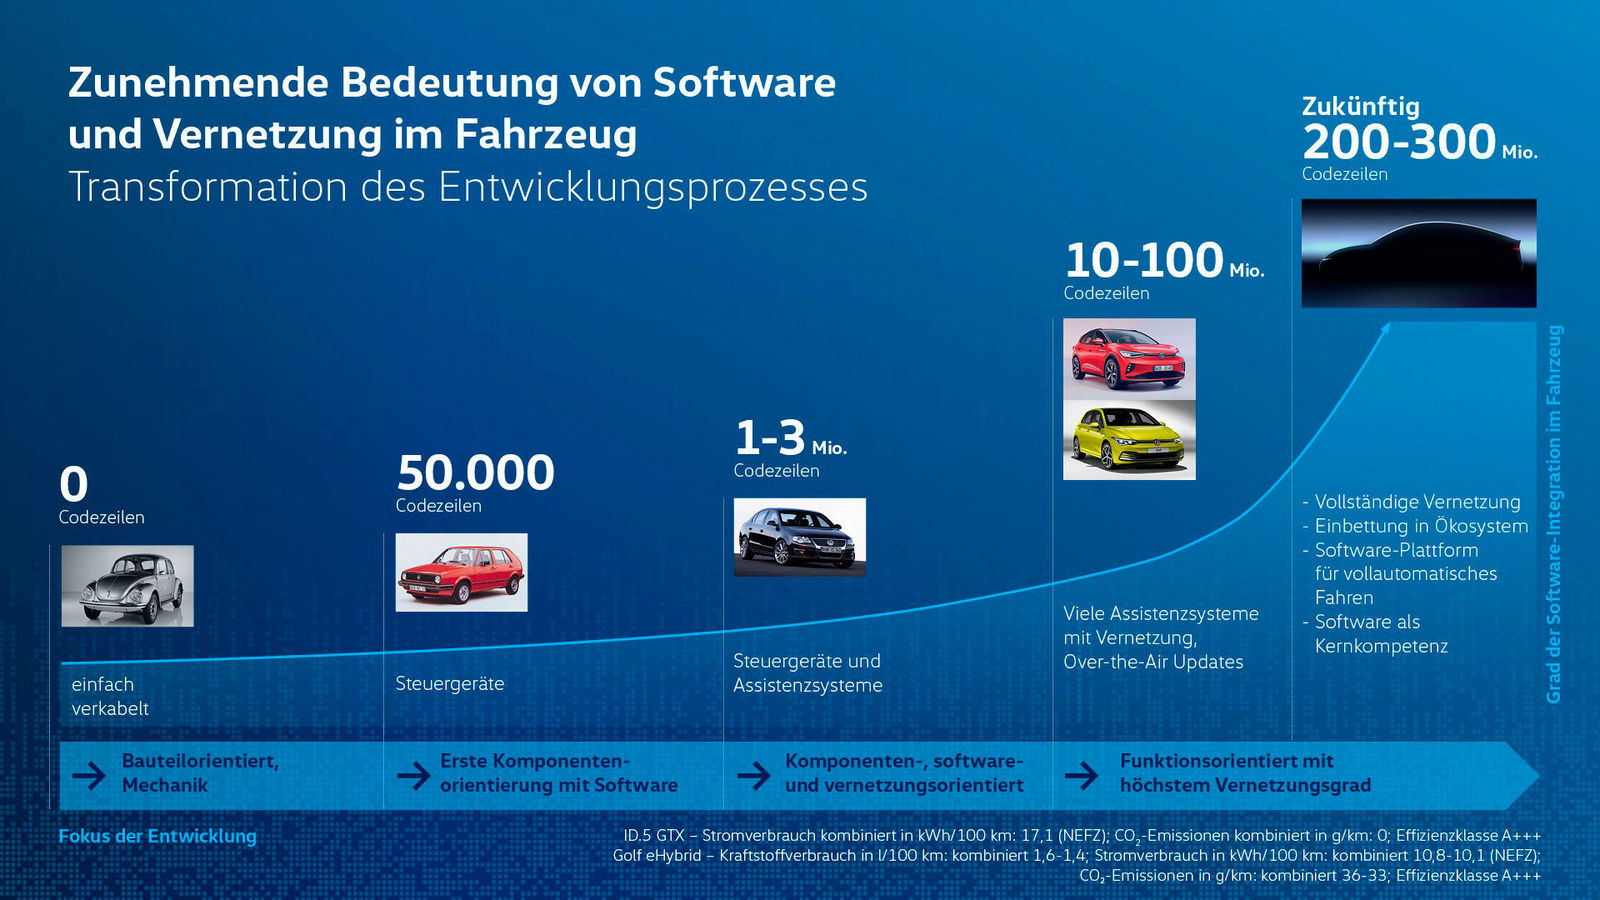 Volkswagen richtet Technische Entwicklung neu aus: mehr Tempo bei Produktzyklen und digitalen Angeboten